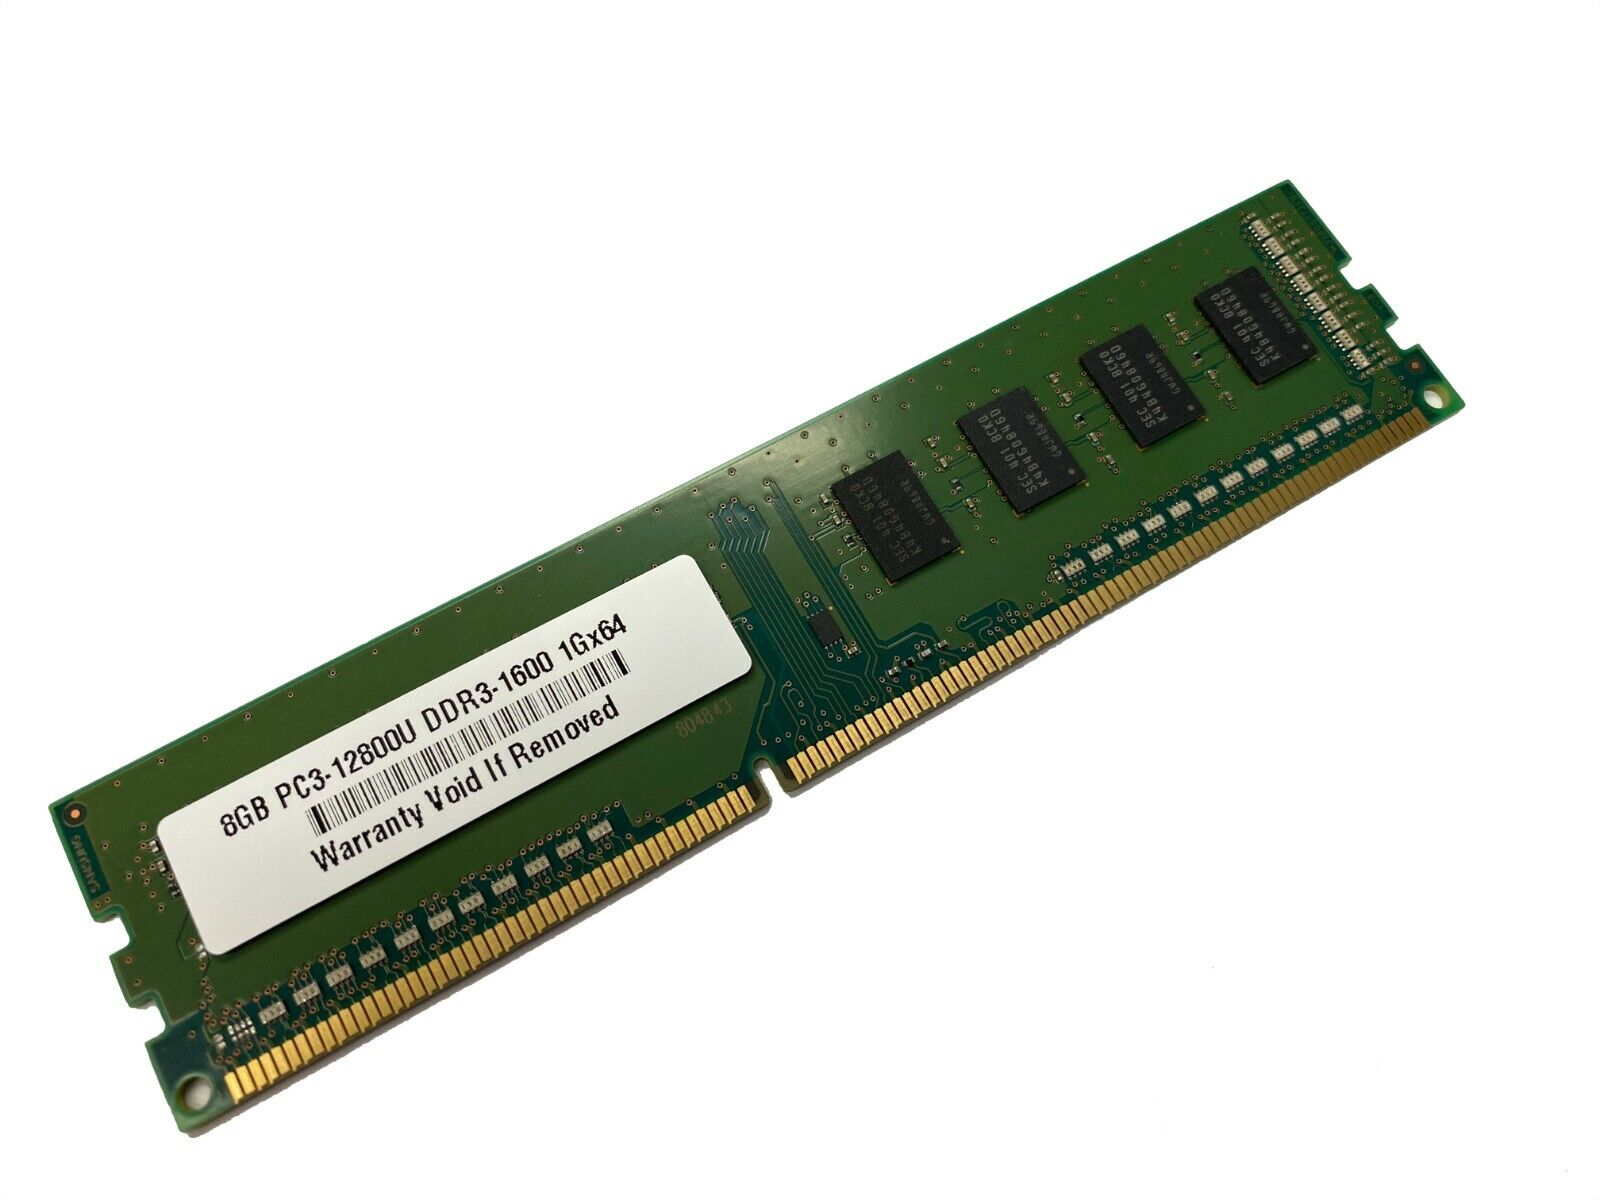 8GB Memory for QNAP TS-879U-RP, TVS-1271U, TVS-871U DDR3 PC3 12800U RAM